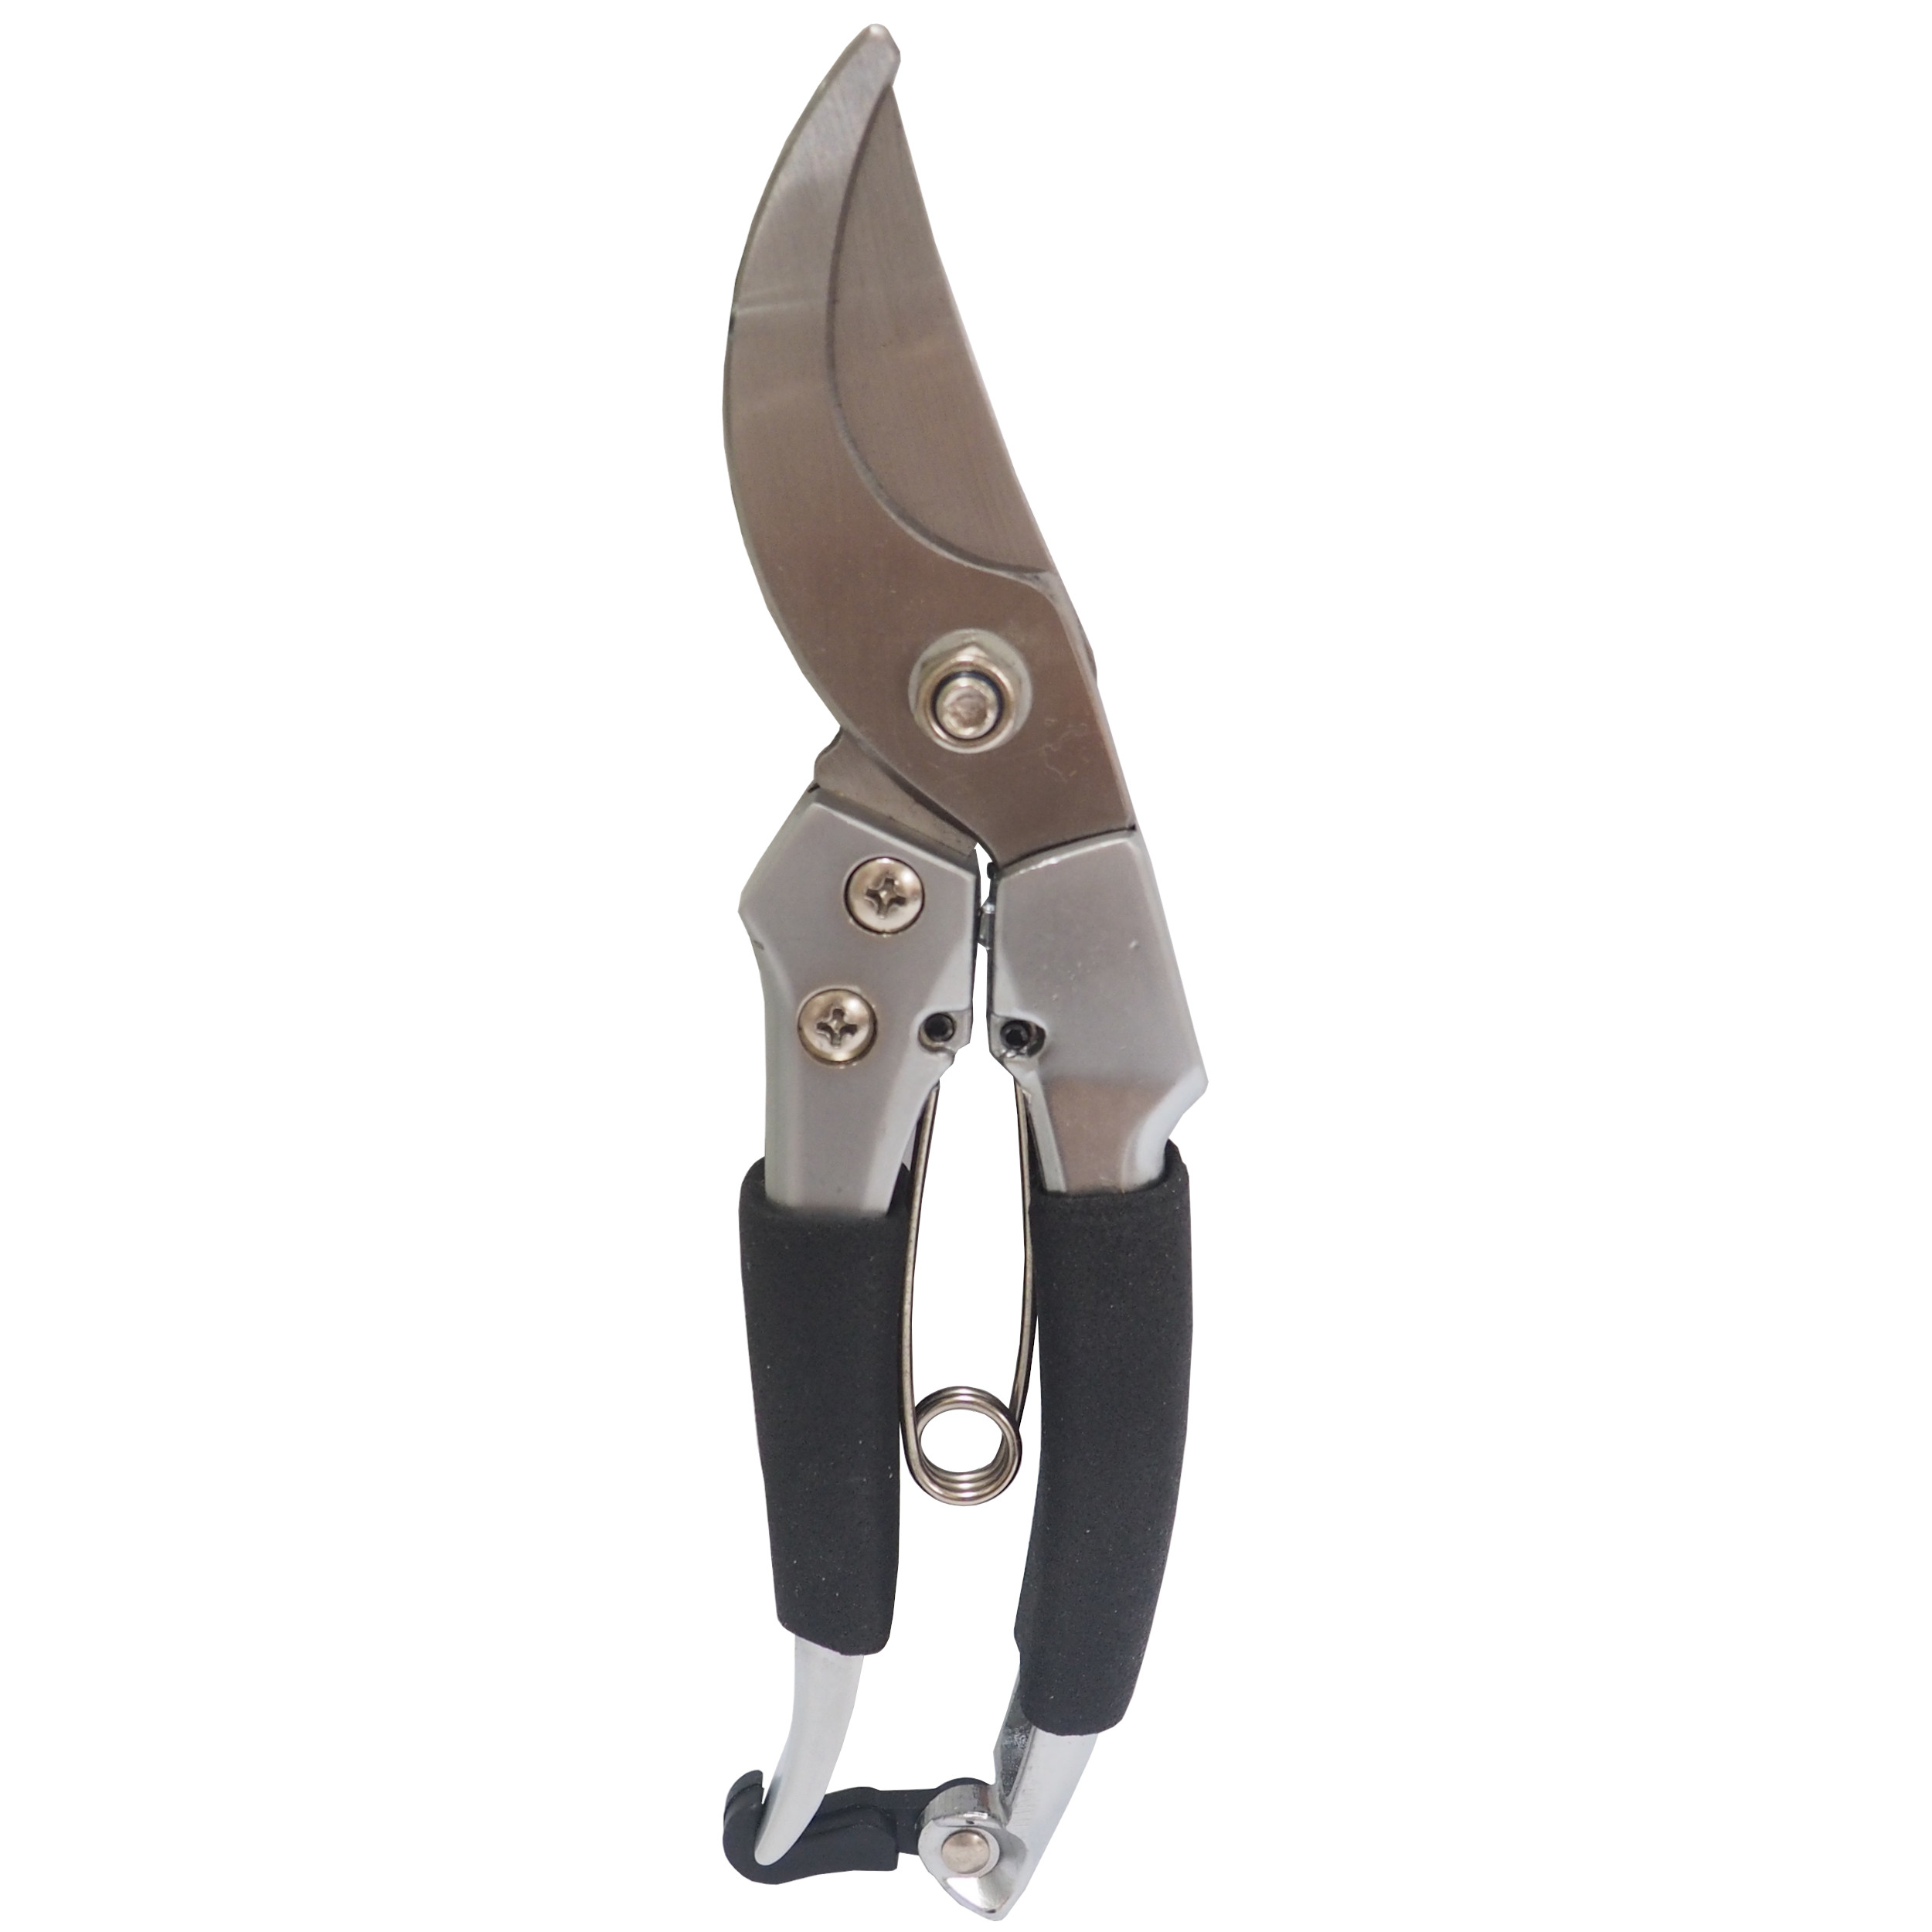 REFLEX nůžky zahradnické, hliníkové, půlkulaté, s drátovou pružinou, 200 mm, profi 0.30 Kg TOP Sklad4 307157 89